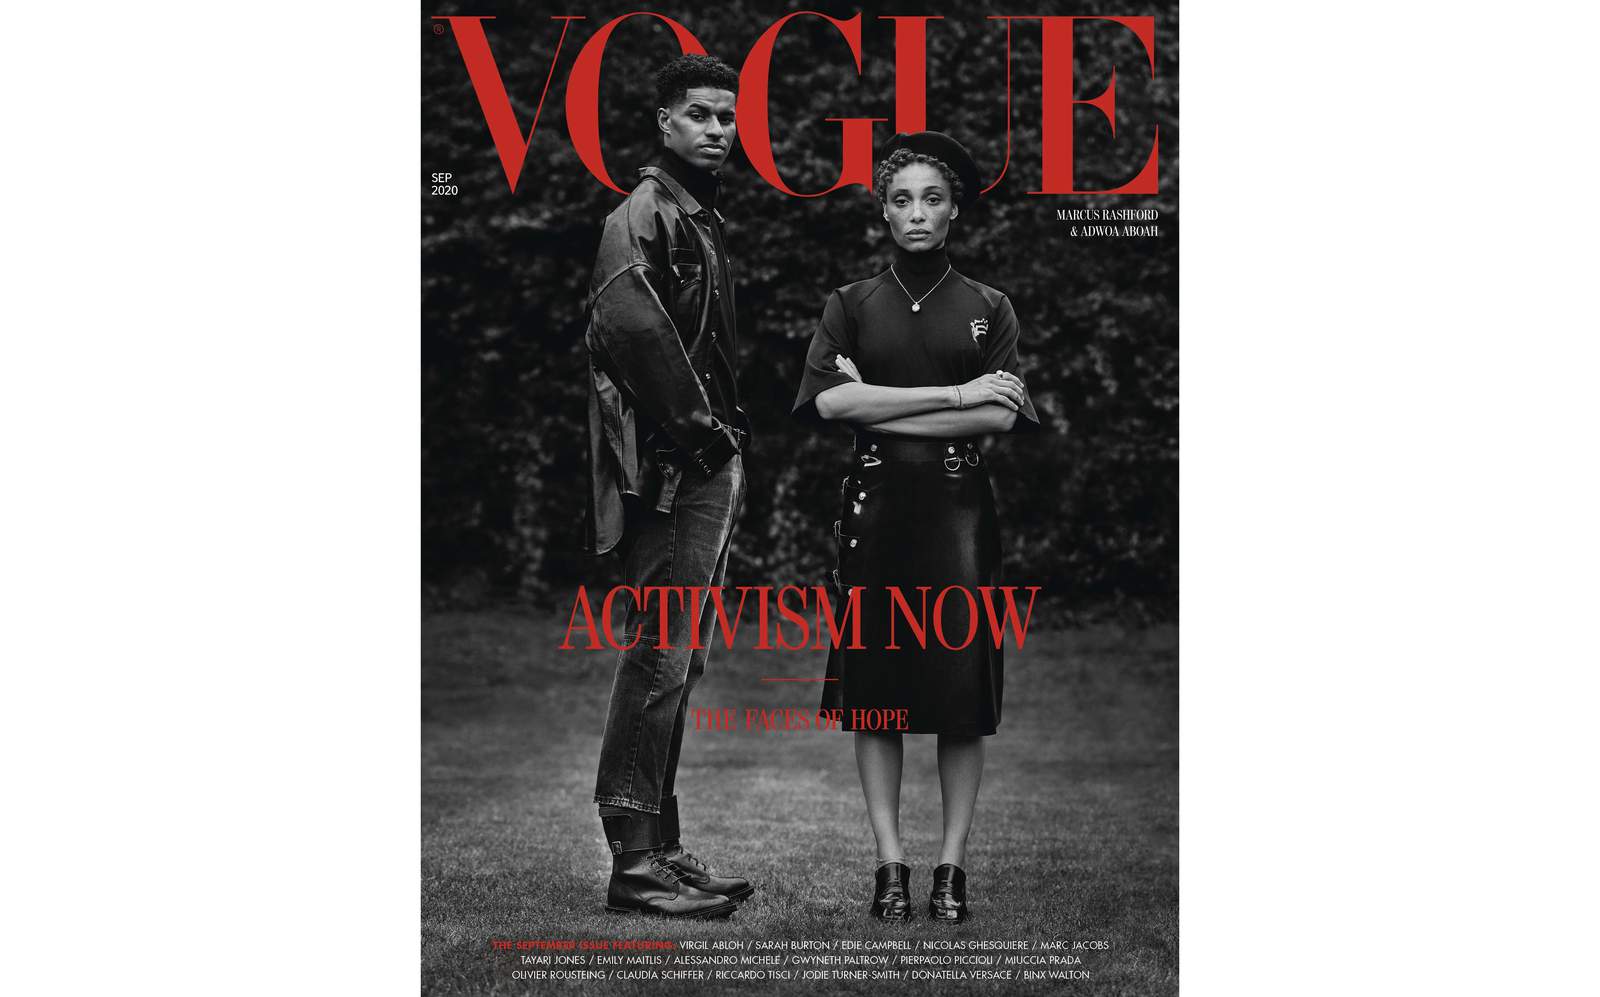 Vogue UK spotlights Black activists, social change